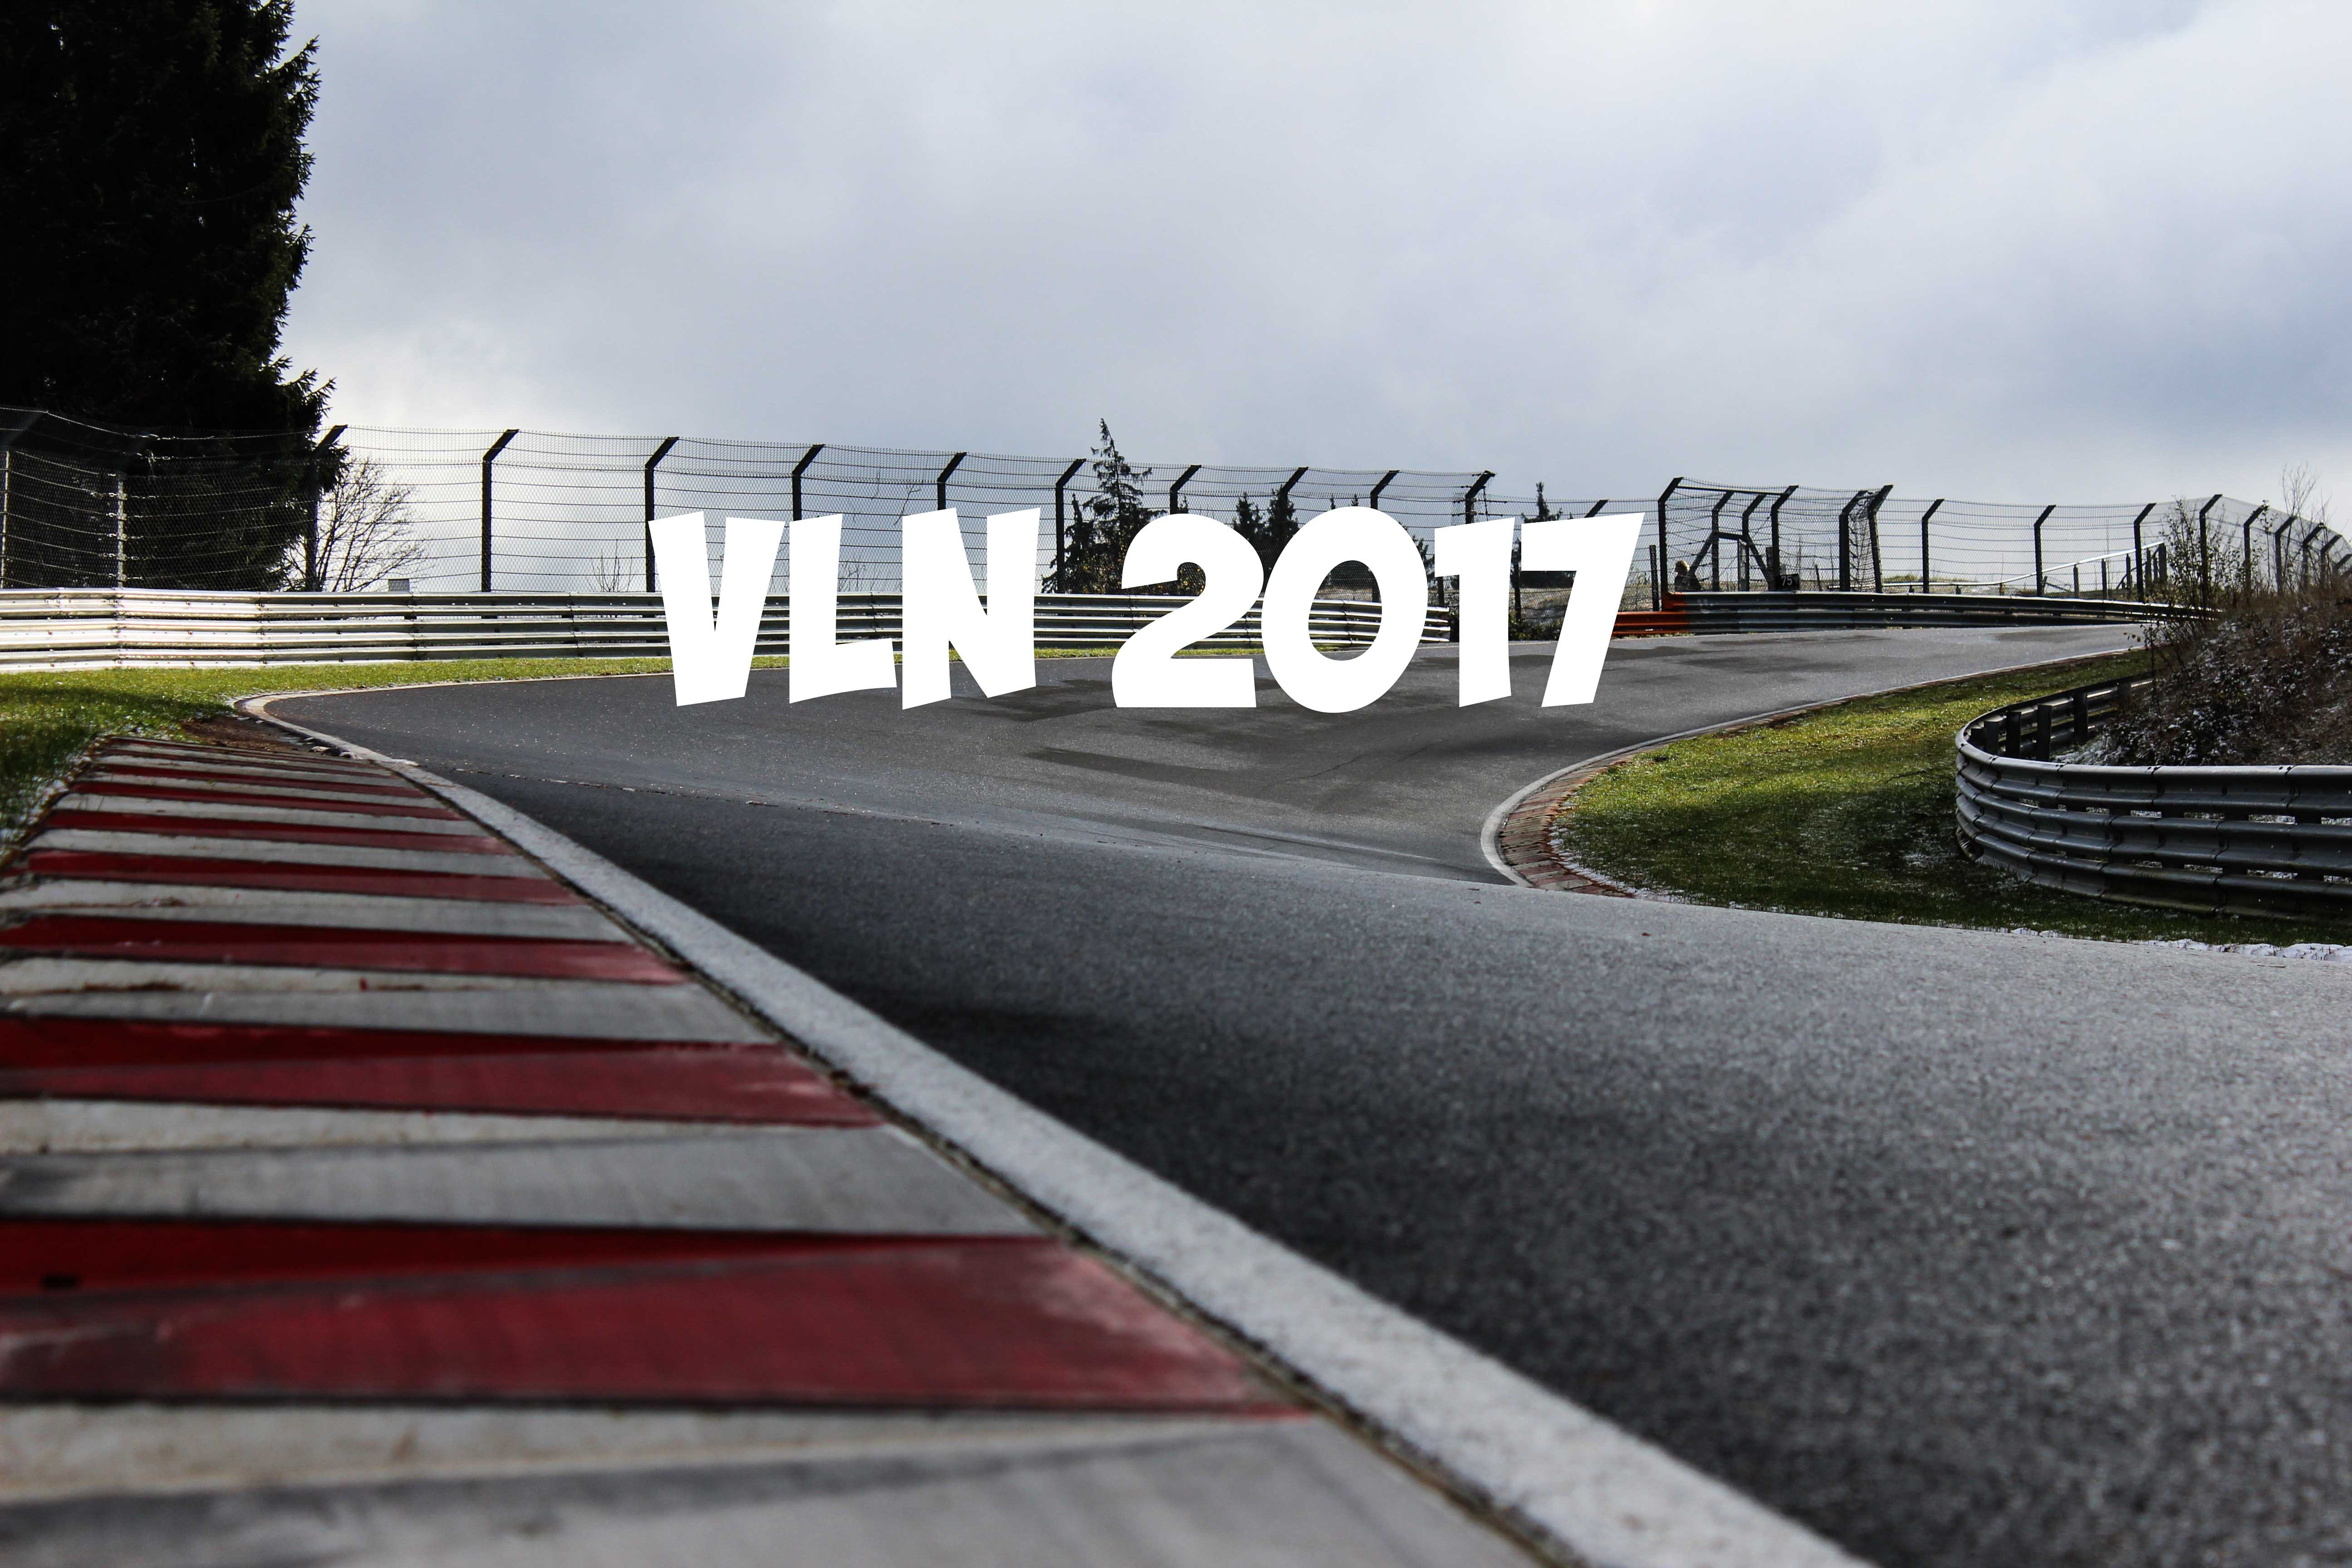 VLN 2017